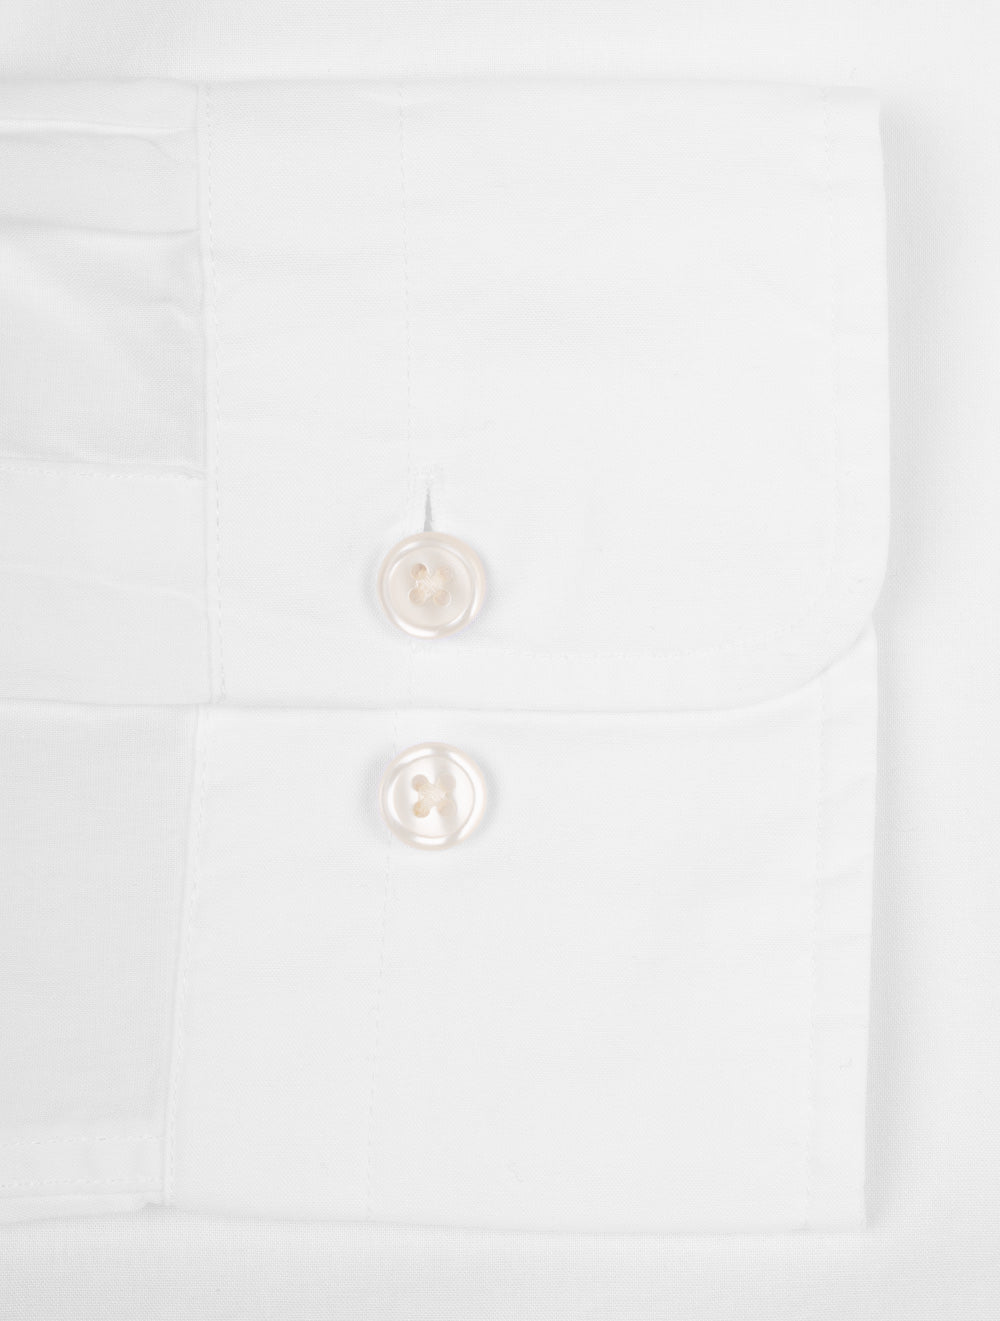 Regular Poplin Shirt White